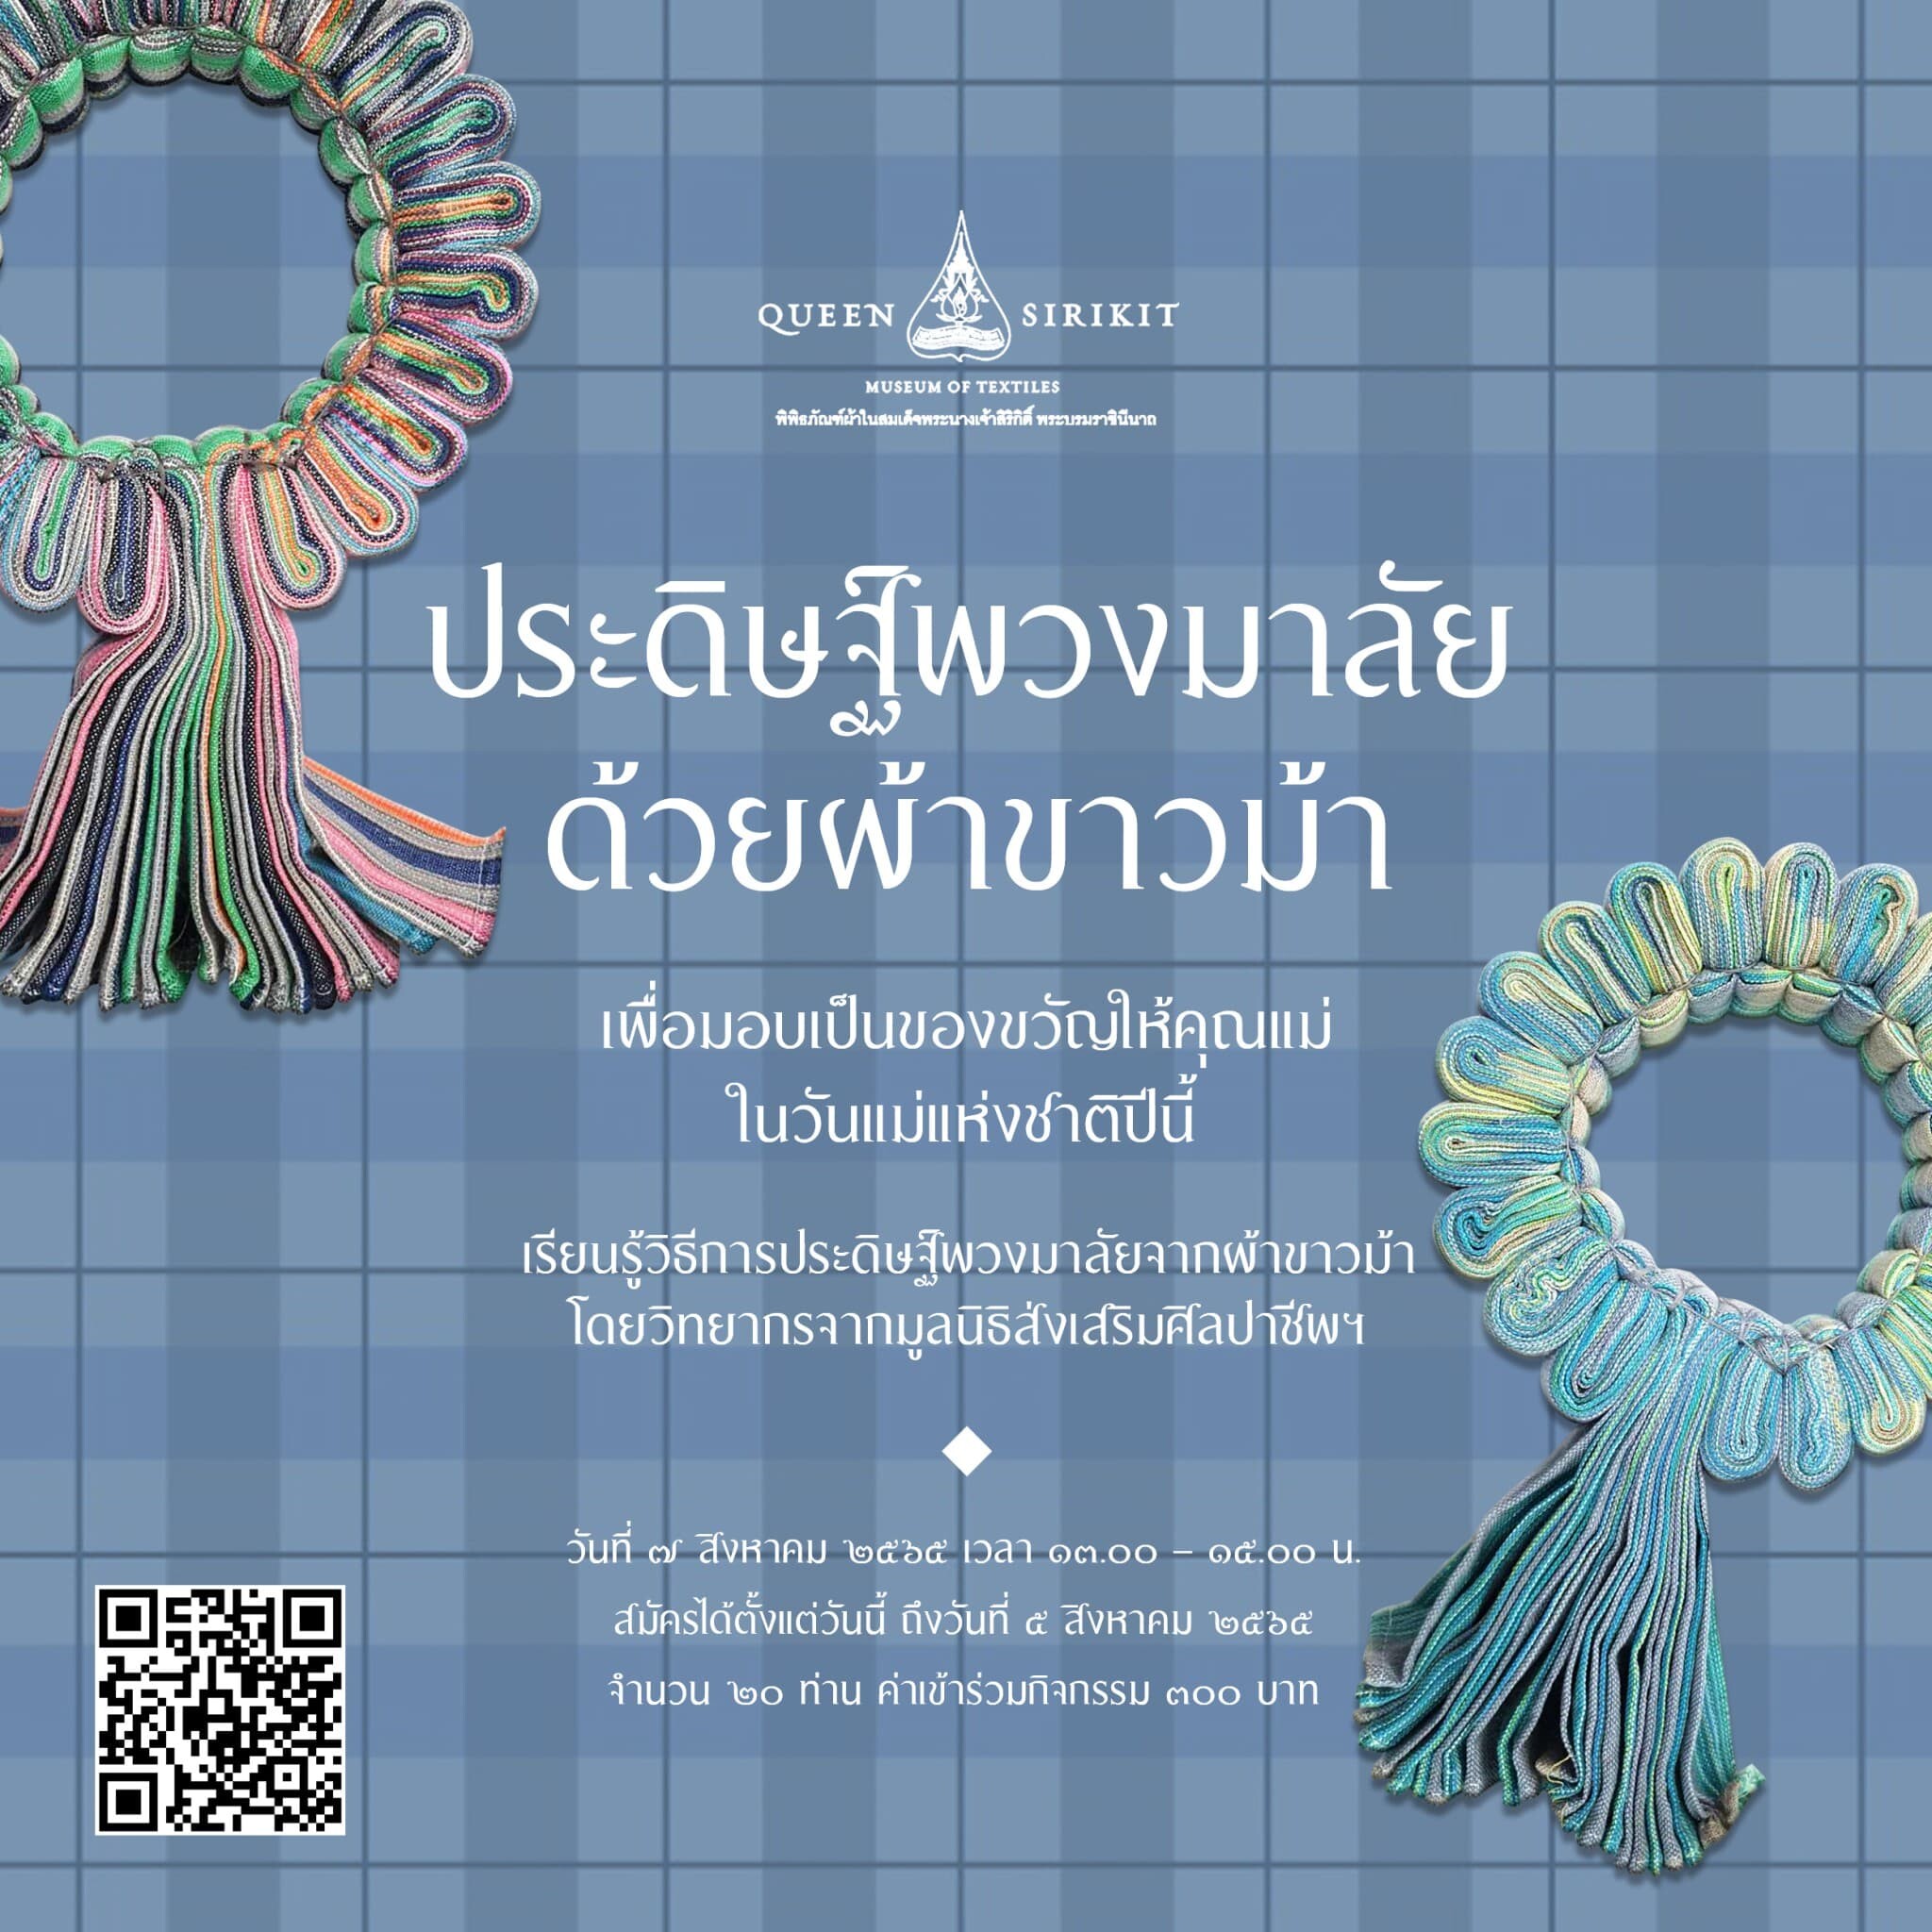 พิพิธภัณฑ์ผ้าฯ ชวนร่วมกิจกรรมพิเศษในเดือนสิงหาคม "ประดิษฐ์พวงมาลัยด้วยผ้าขาวม้า" มอบเป็นของขวัญวันแม่และวันผ้าไทยแห่งชาติ